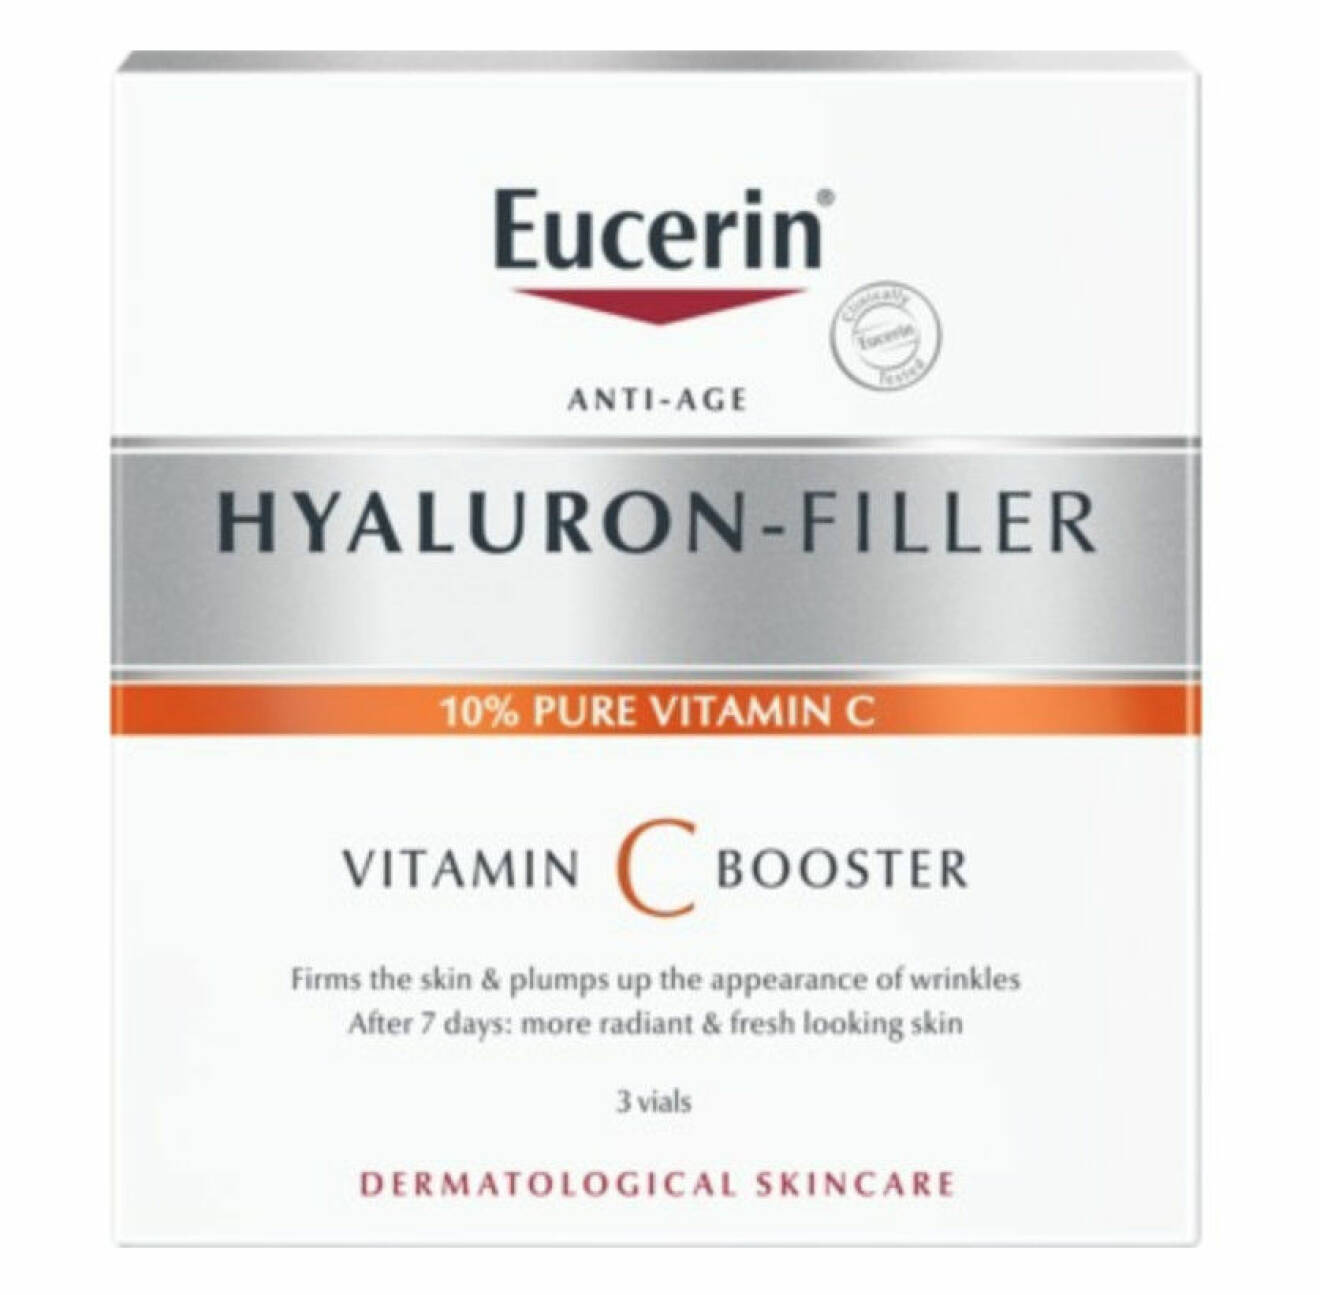 Kuren vitamin C Booster från Eucerin